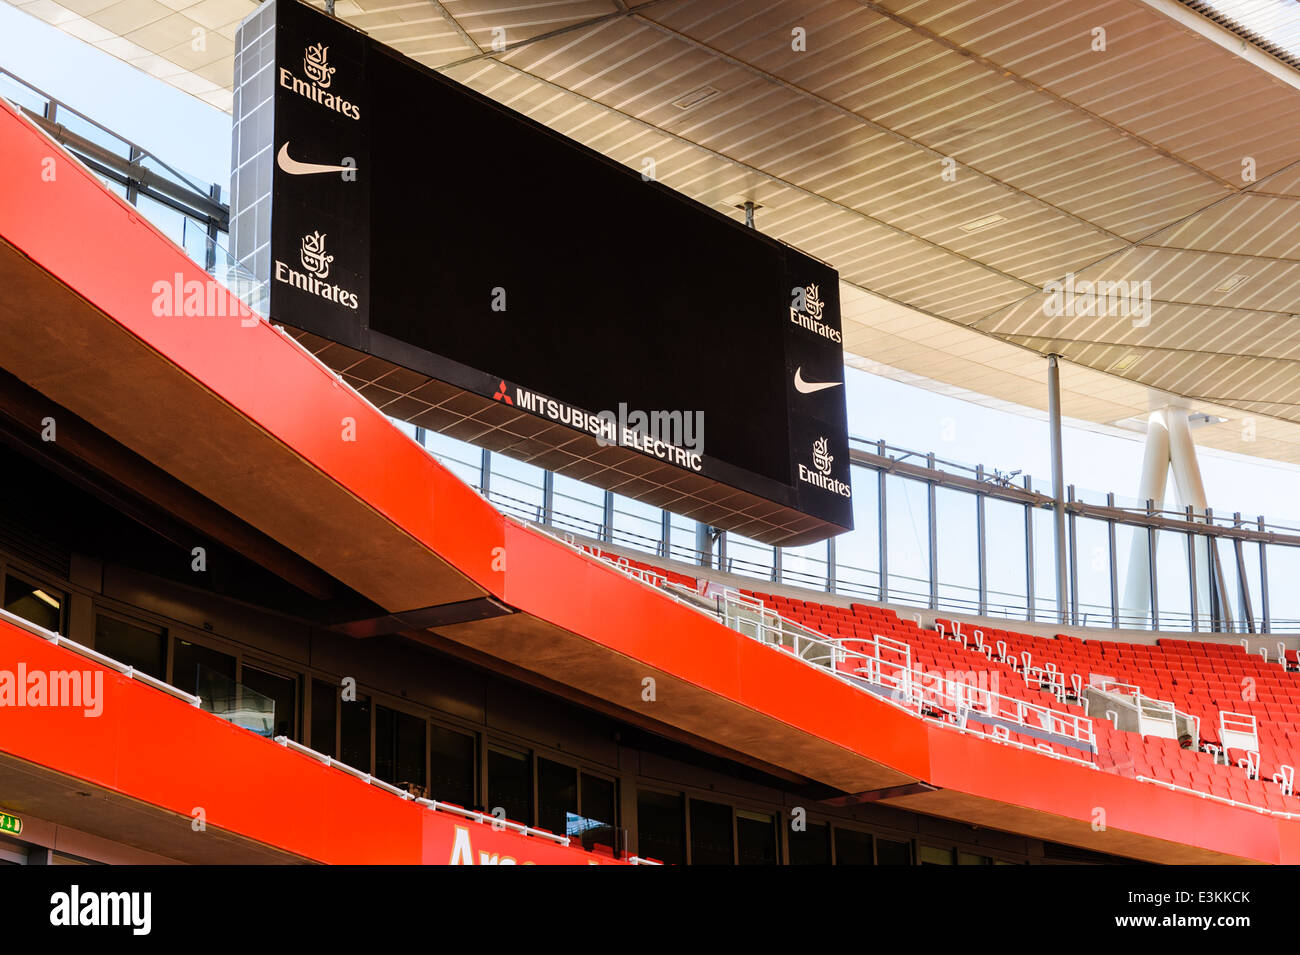 Mitsubishi Electric scoreboard presso lo stadio Emirates dell'Arsenal Football Club Foto Stock